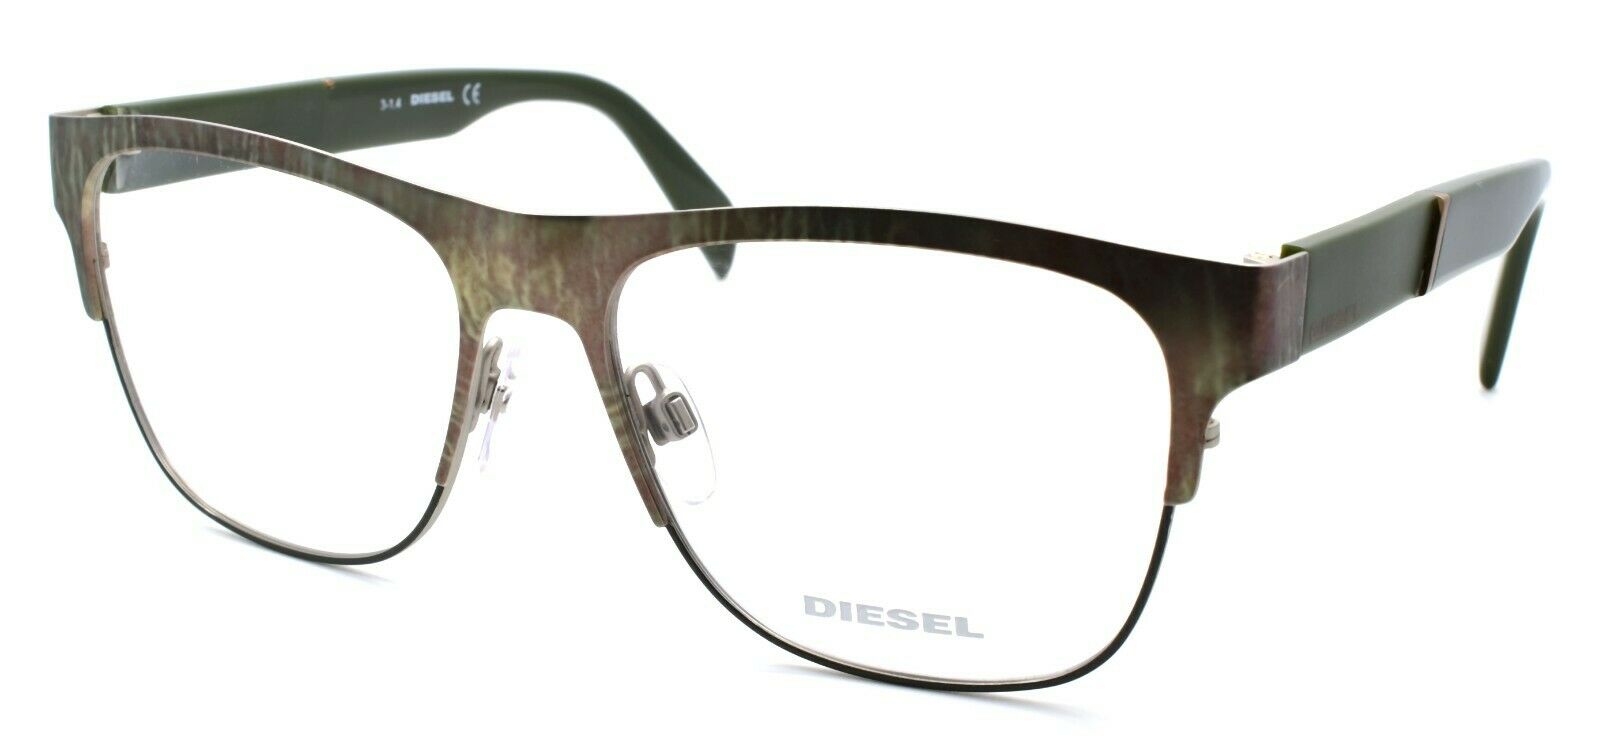 1-Diesel DL5094 098 Men's Eyeglasses Frames 55-16-145 Tarnished Green-664689632565-IKSpecs